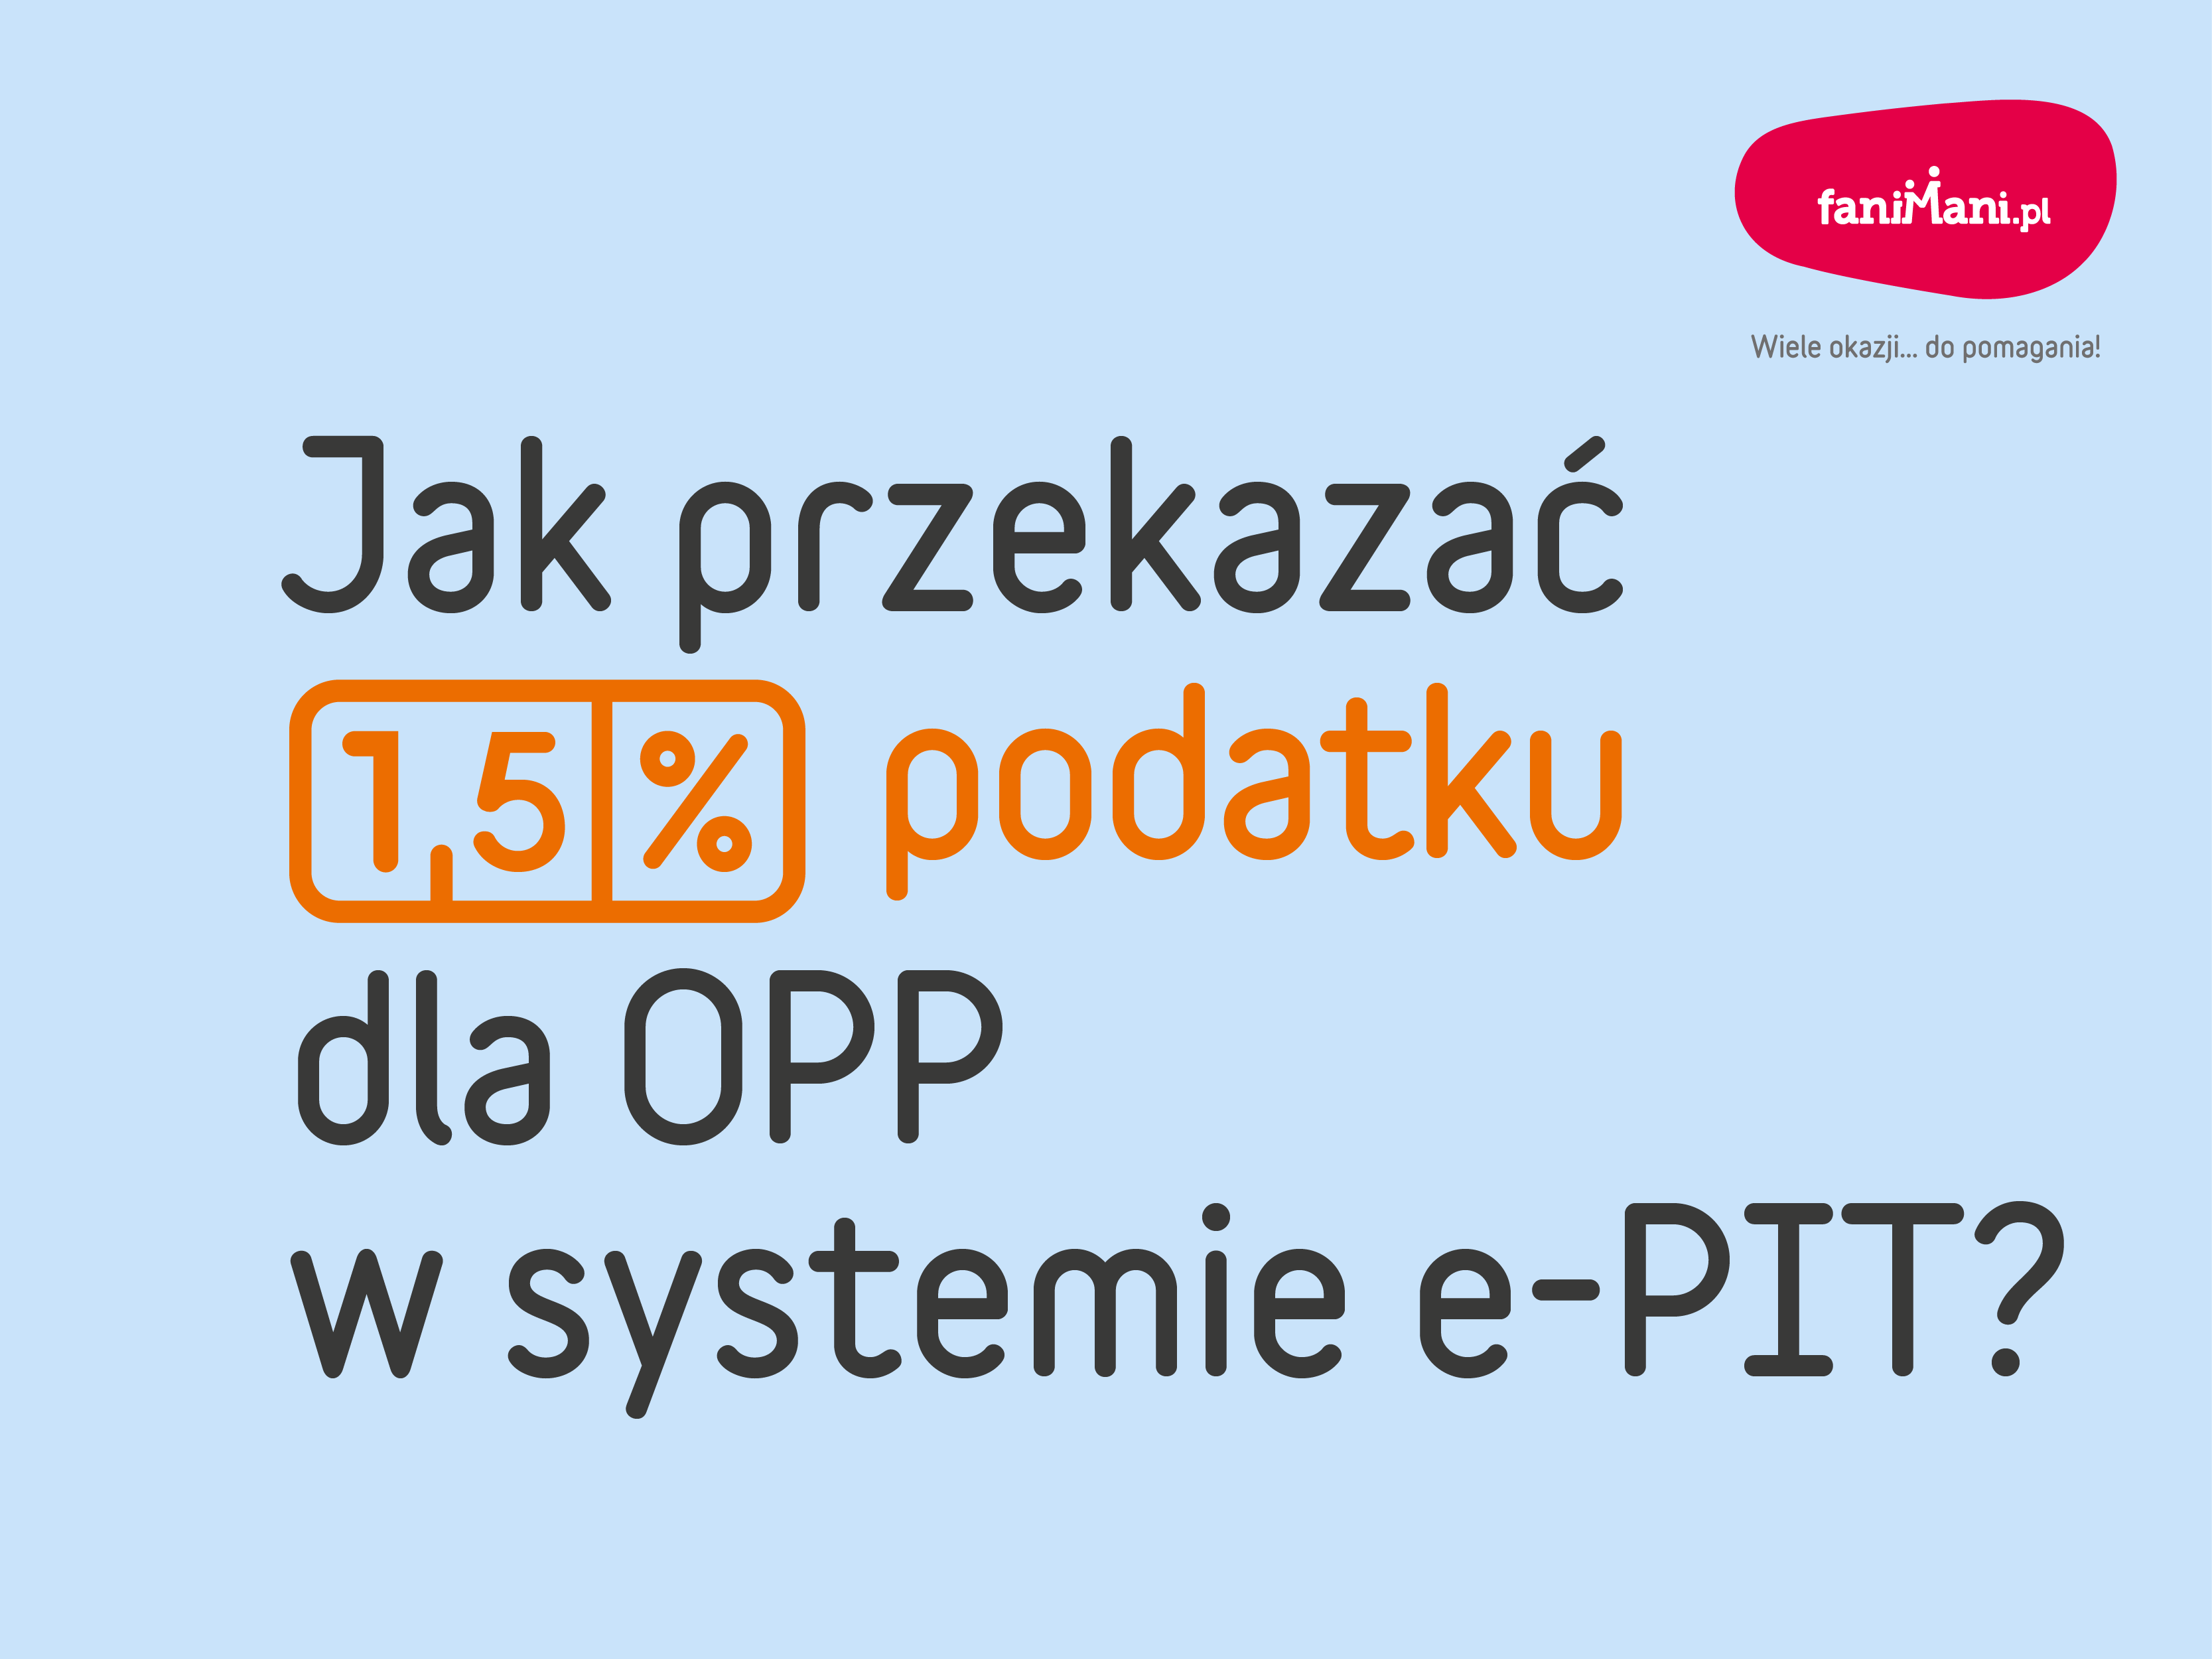 Jak przekazać 1,5% podatku dla OPP w systemie Twój e-PIT